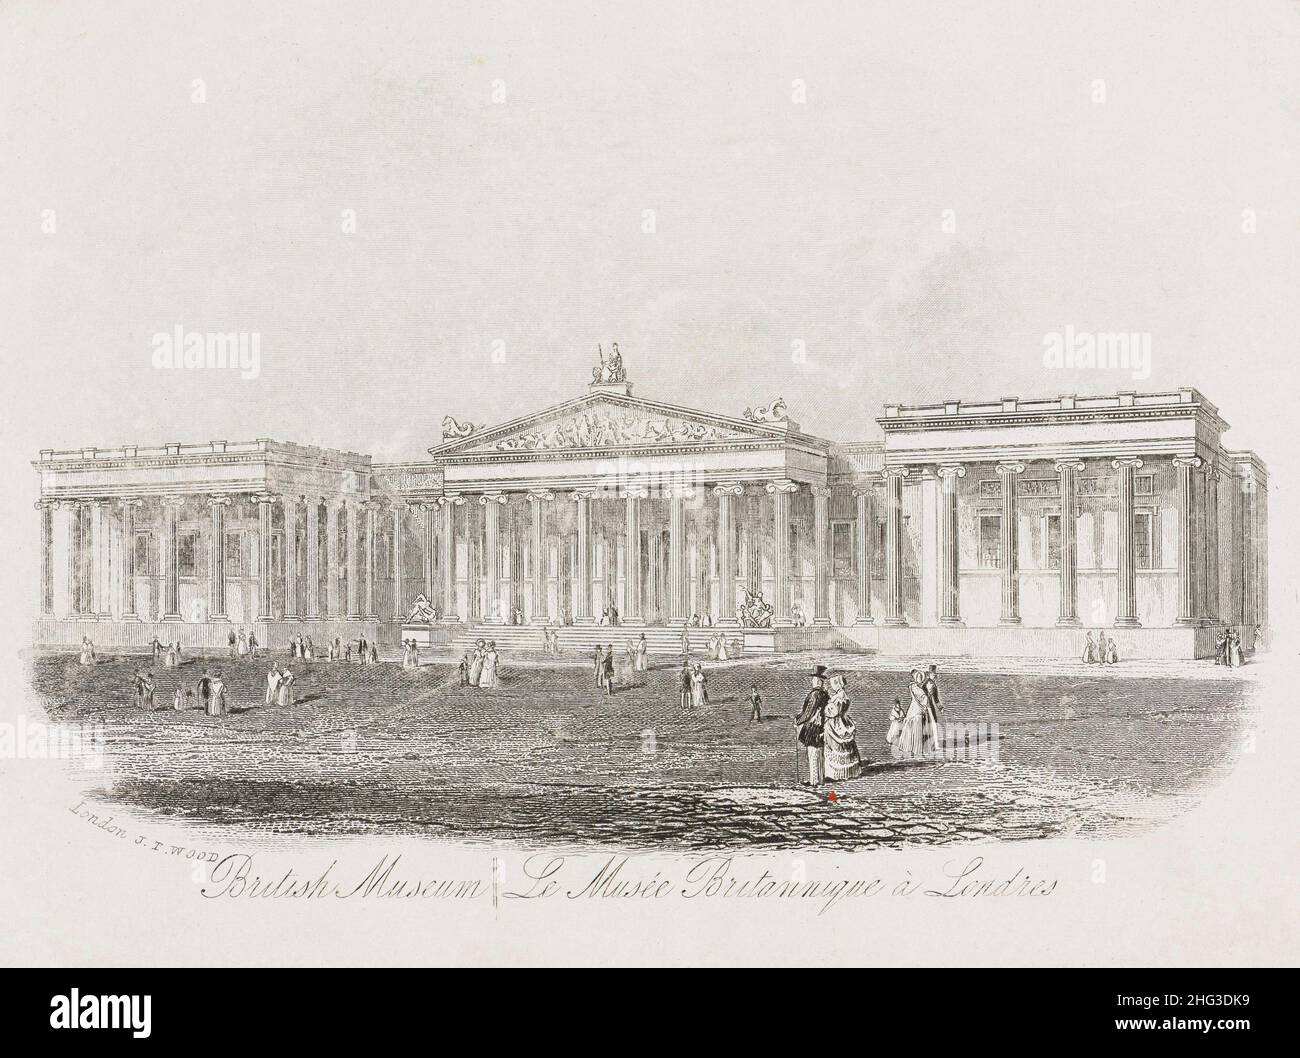 Gravure du British Museum à Londres.1862 le British Museum est une institution publique dédiée à l'histoire humaine, à l'art et à la culture, située dans le Bloo Banque D'Images